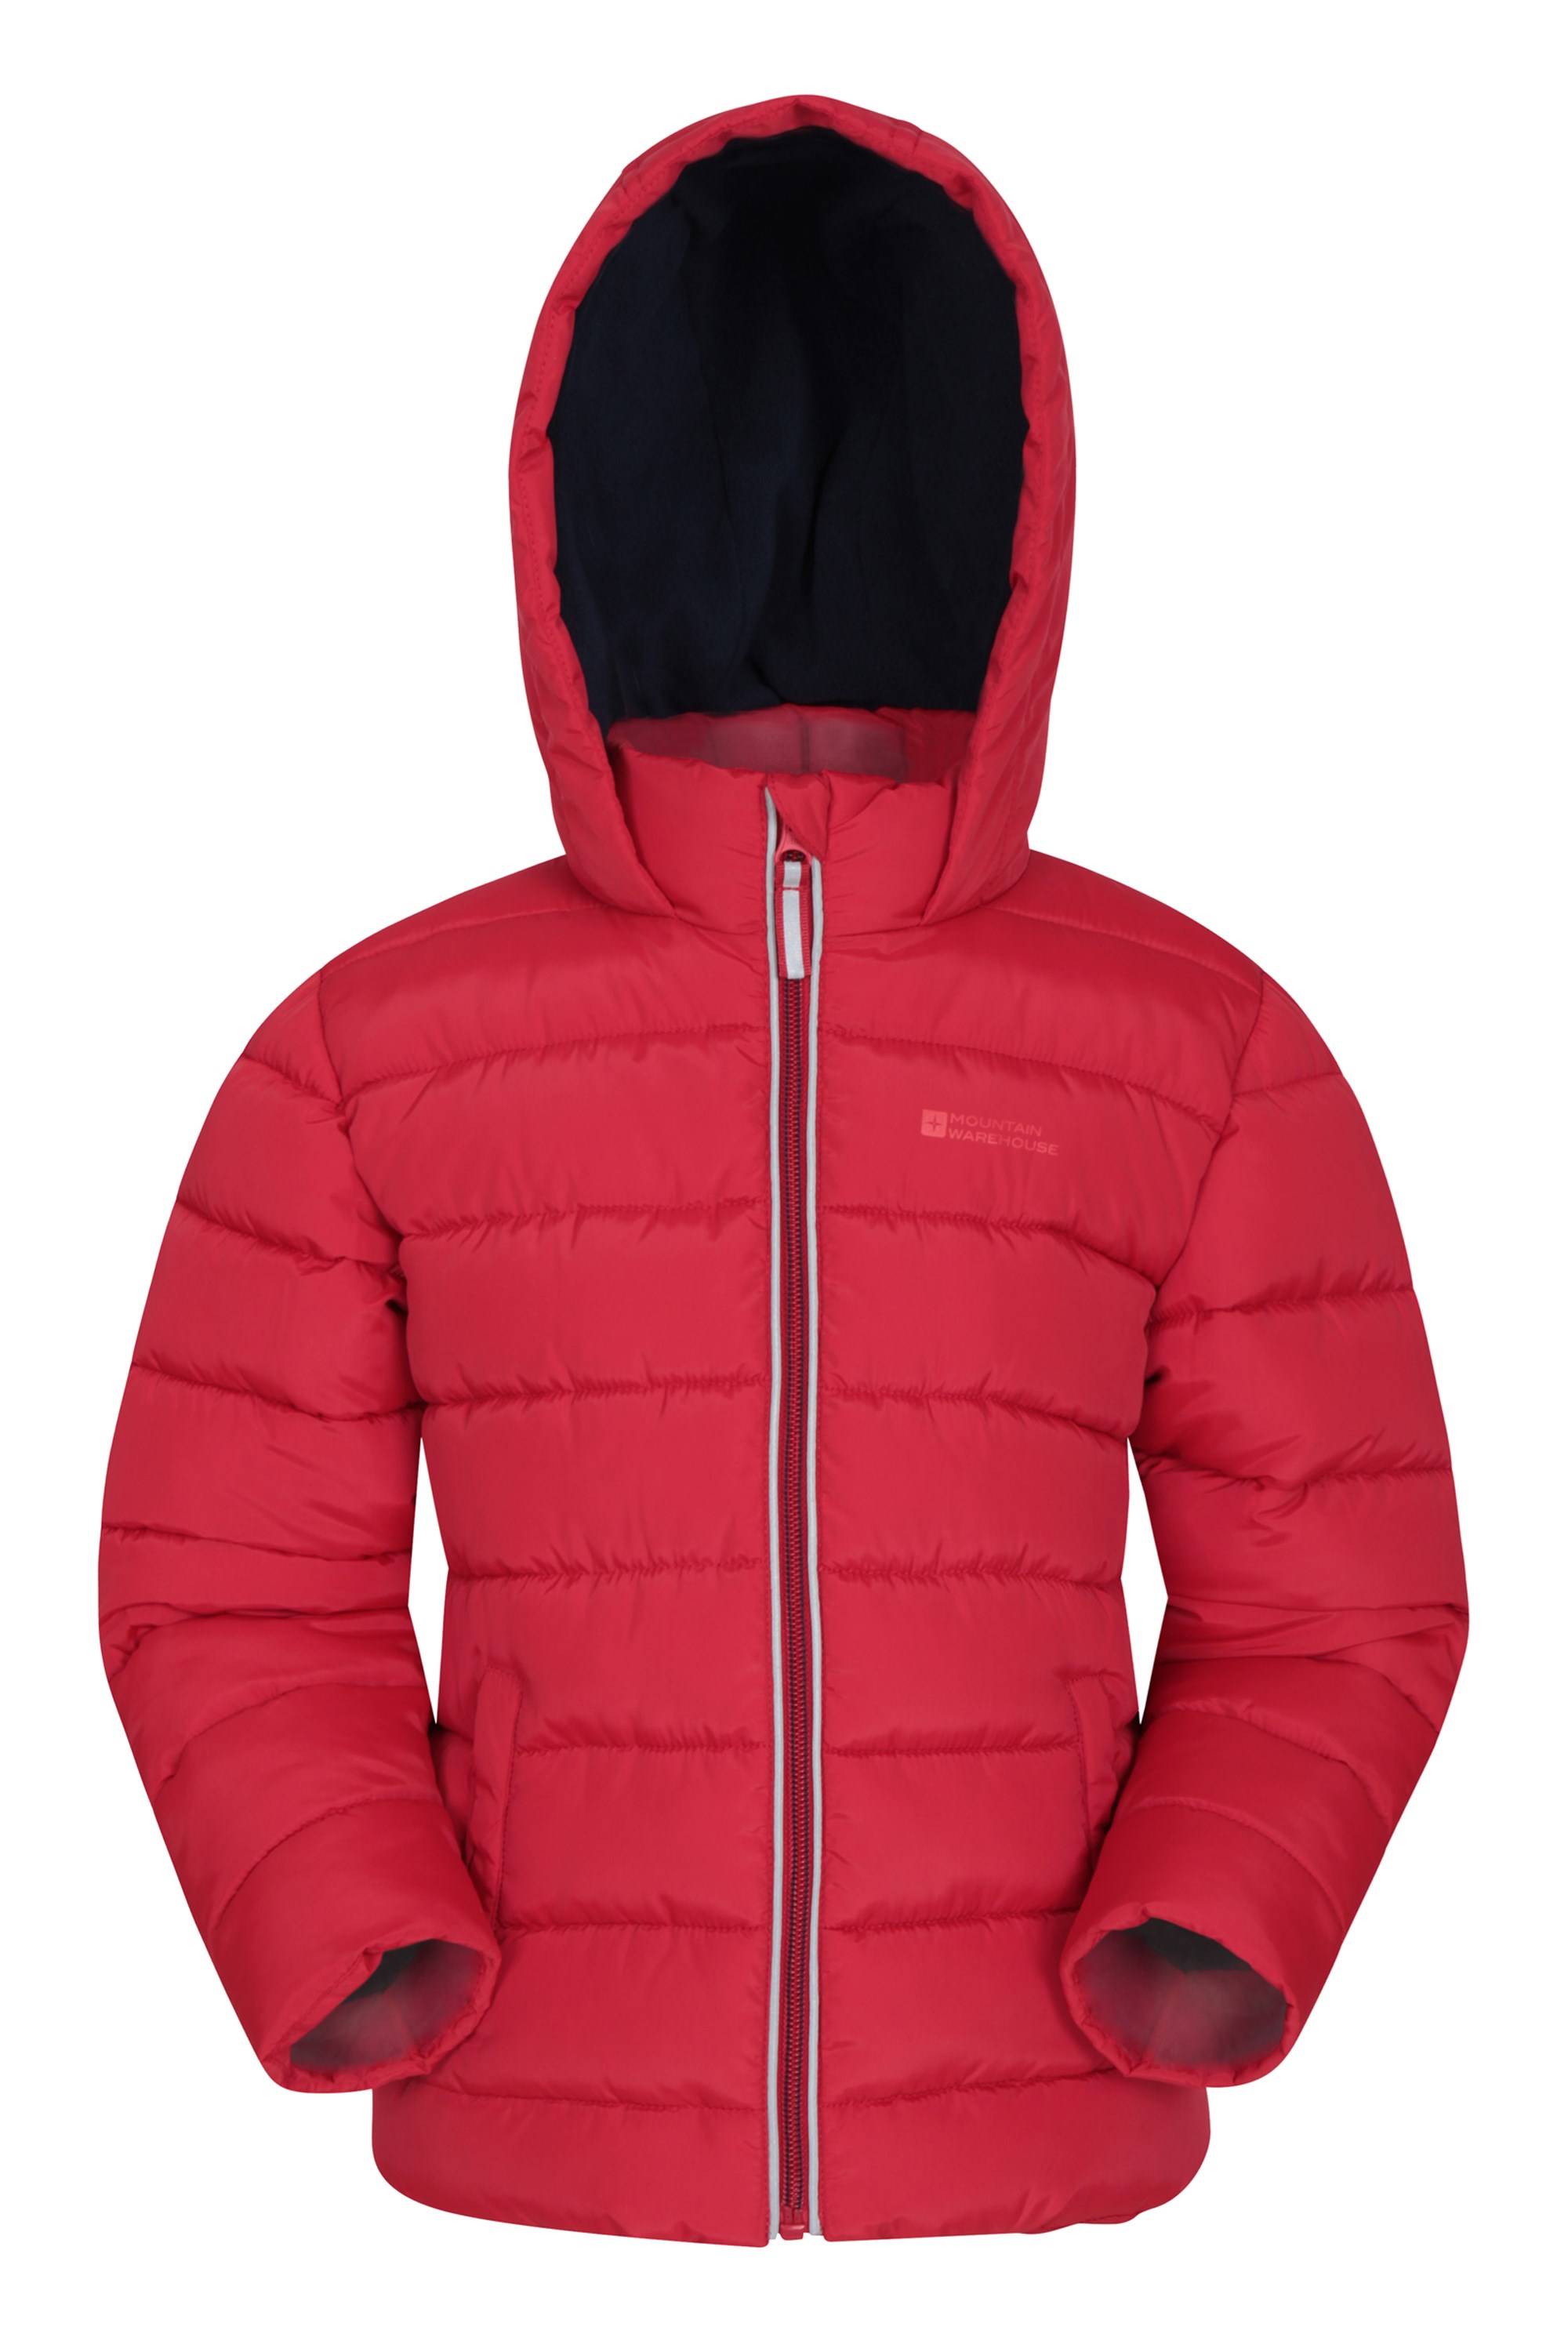 Eden Fleece Lined Kids Padded Jacket | Mountain Warehouse GB